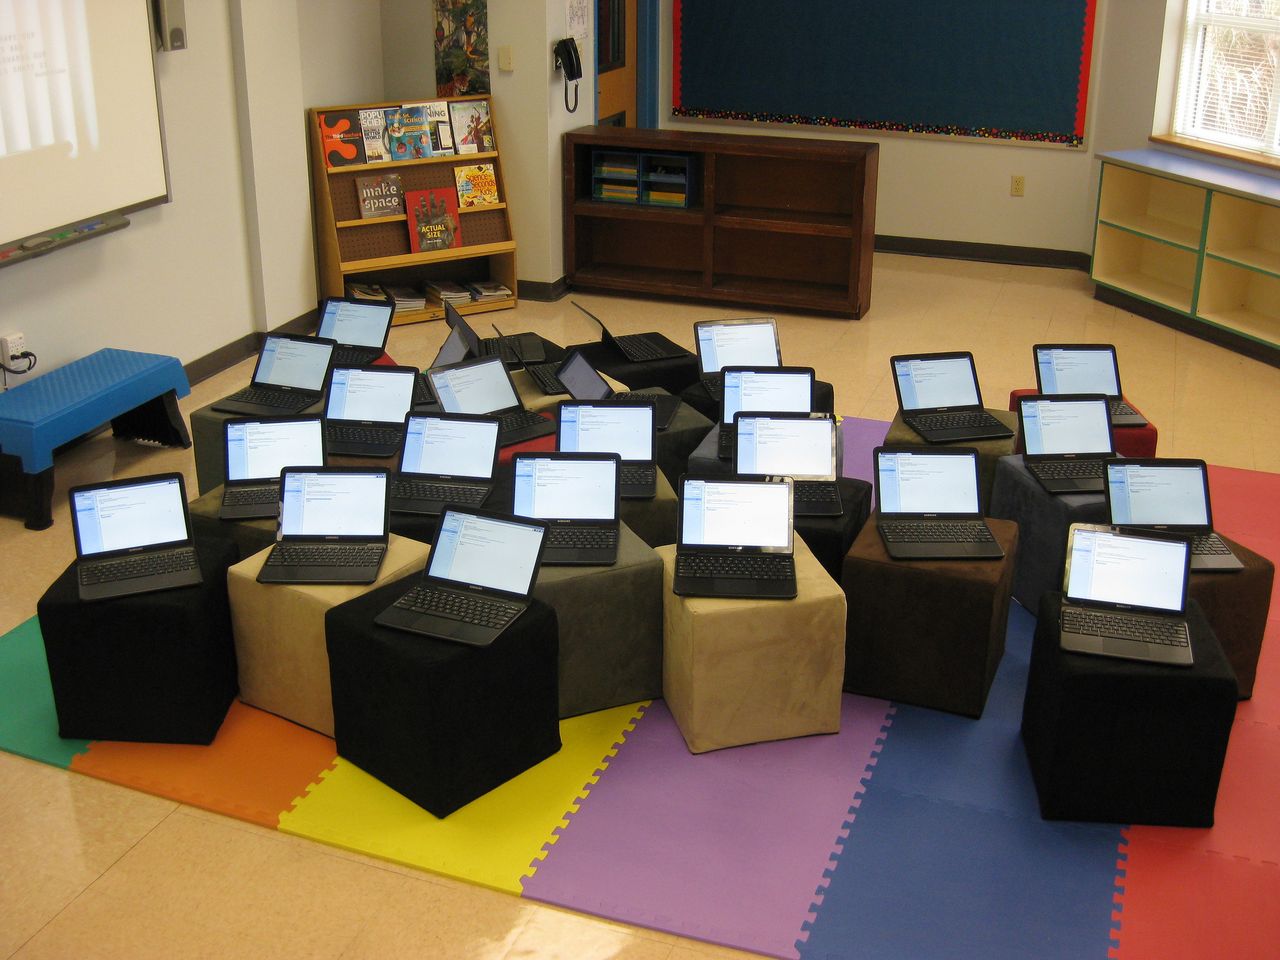 Pracownie szkolne z Chromebookami to już nie fantazja, ale rzeczywistość.